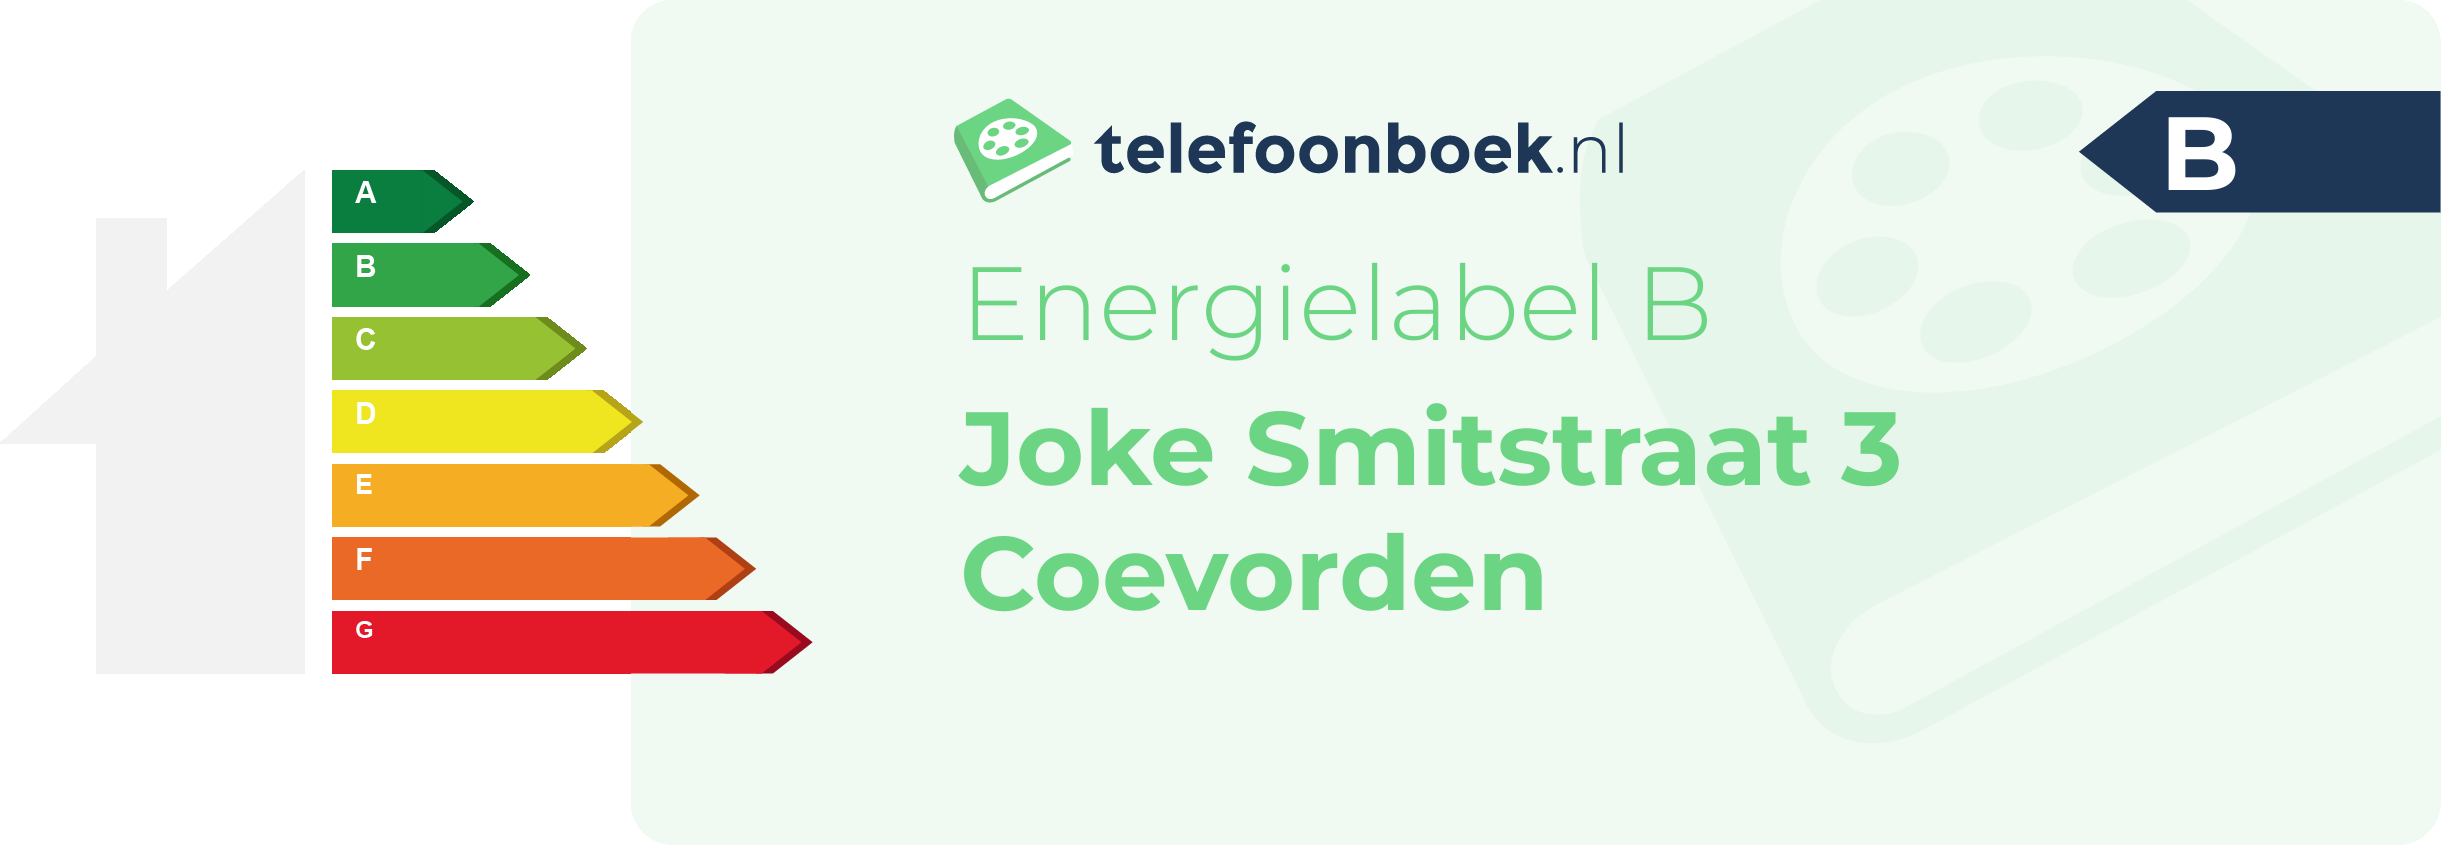 Energielabel Joke Smitstraat 3 Coevorden